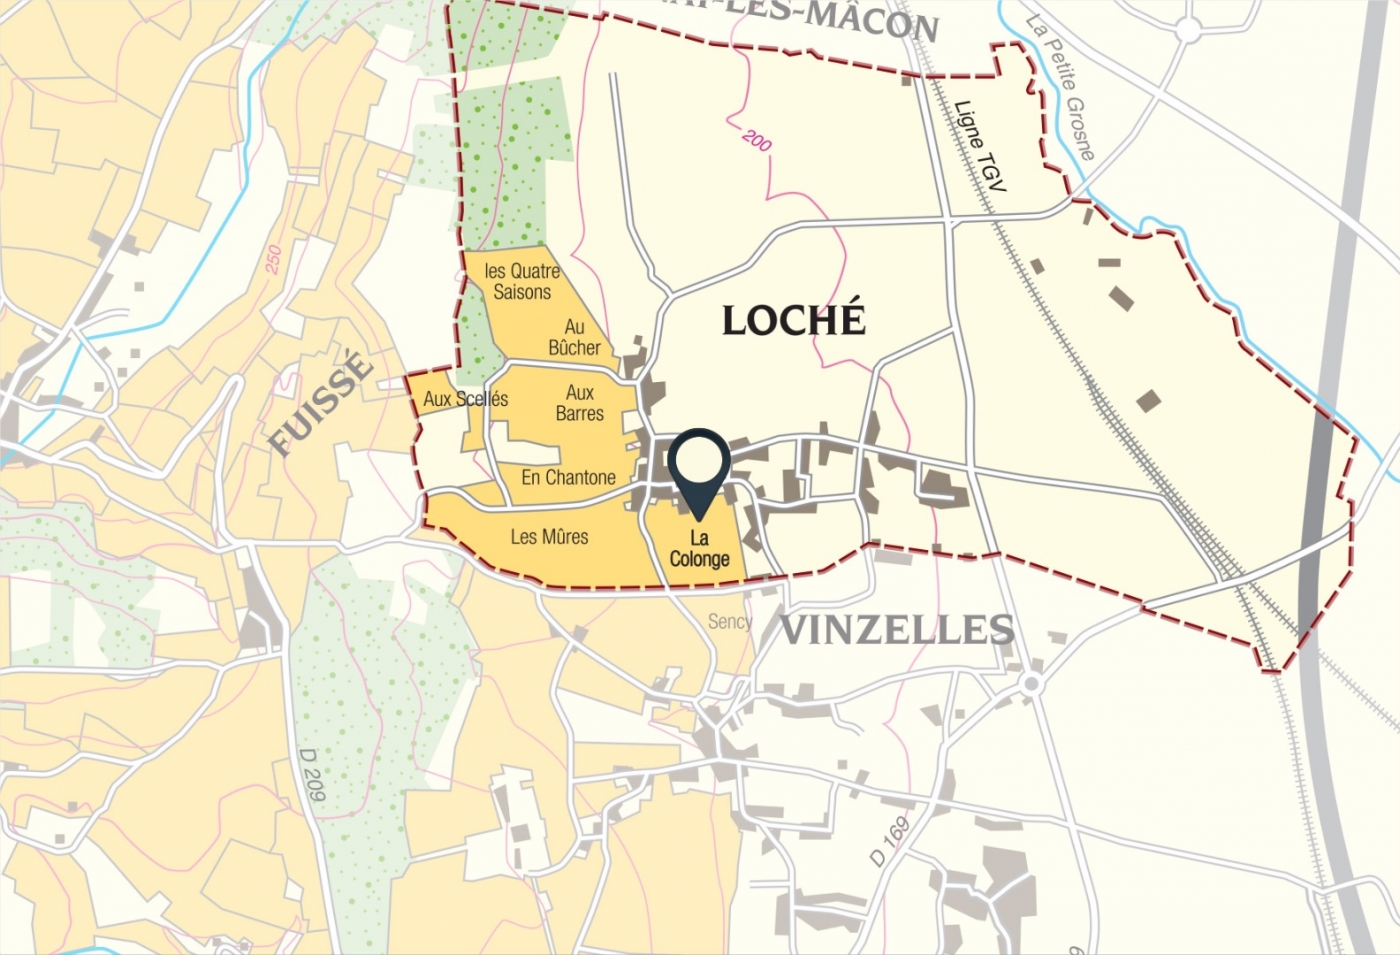 Carte parcelle vin - Pouilly-Loché Climat « La Colonge » Bret Brothers